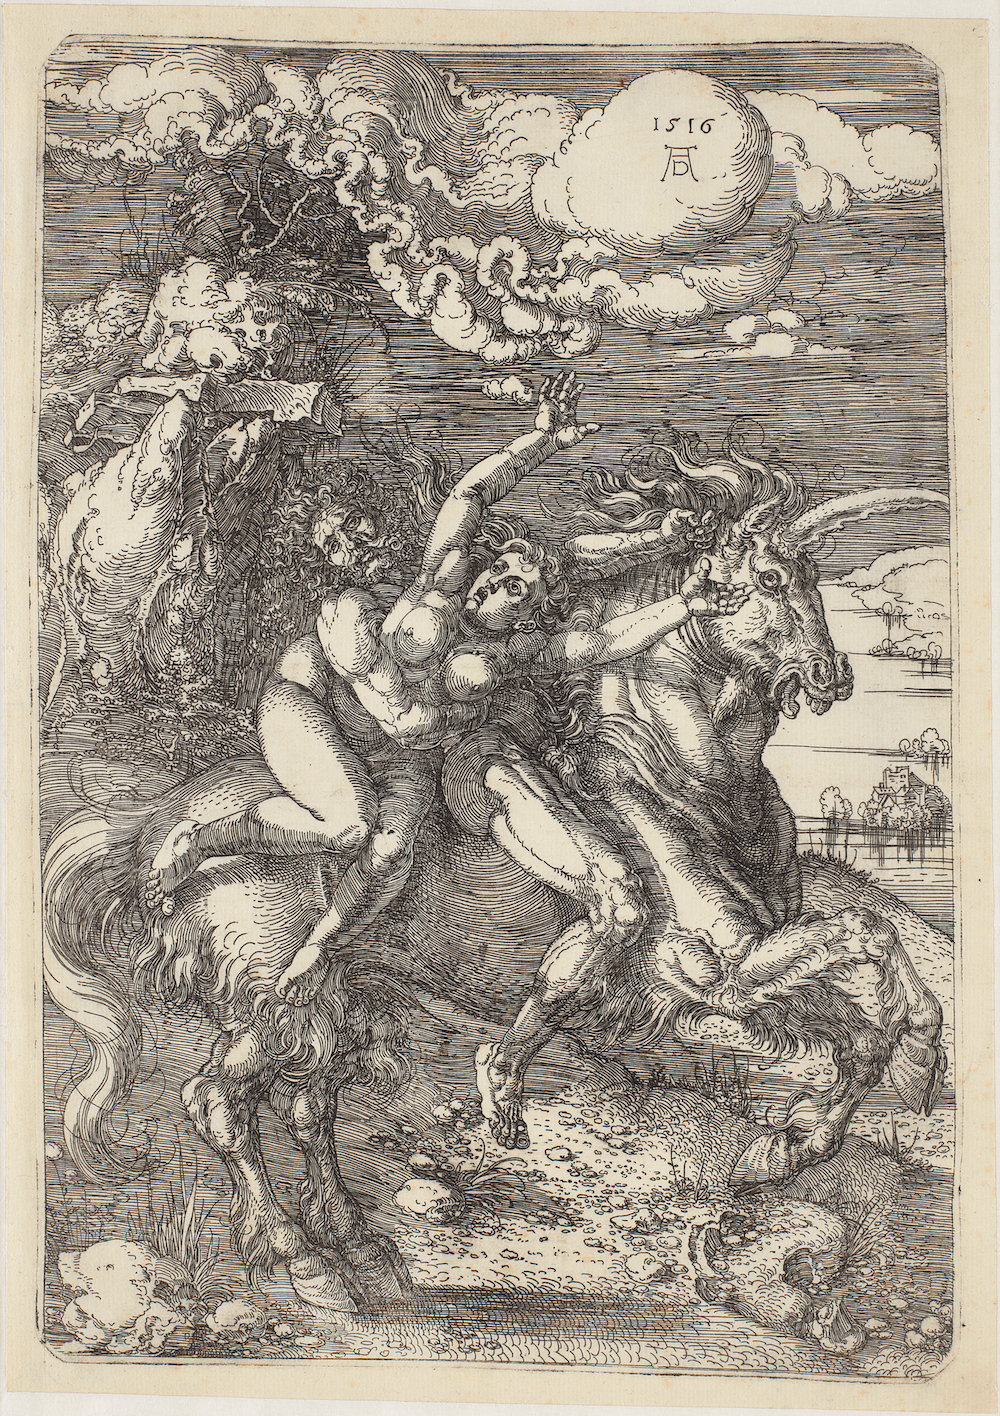 Ontvoering op een eenhoorn by Albrecht Durer - 1516 - 393 x 230 mm SMK - Staatsmuseum voor Kunst